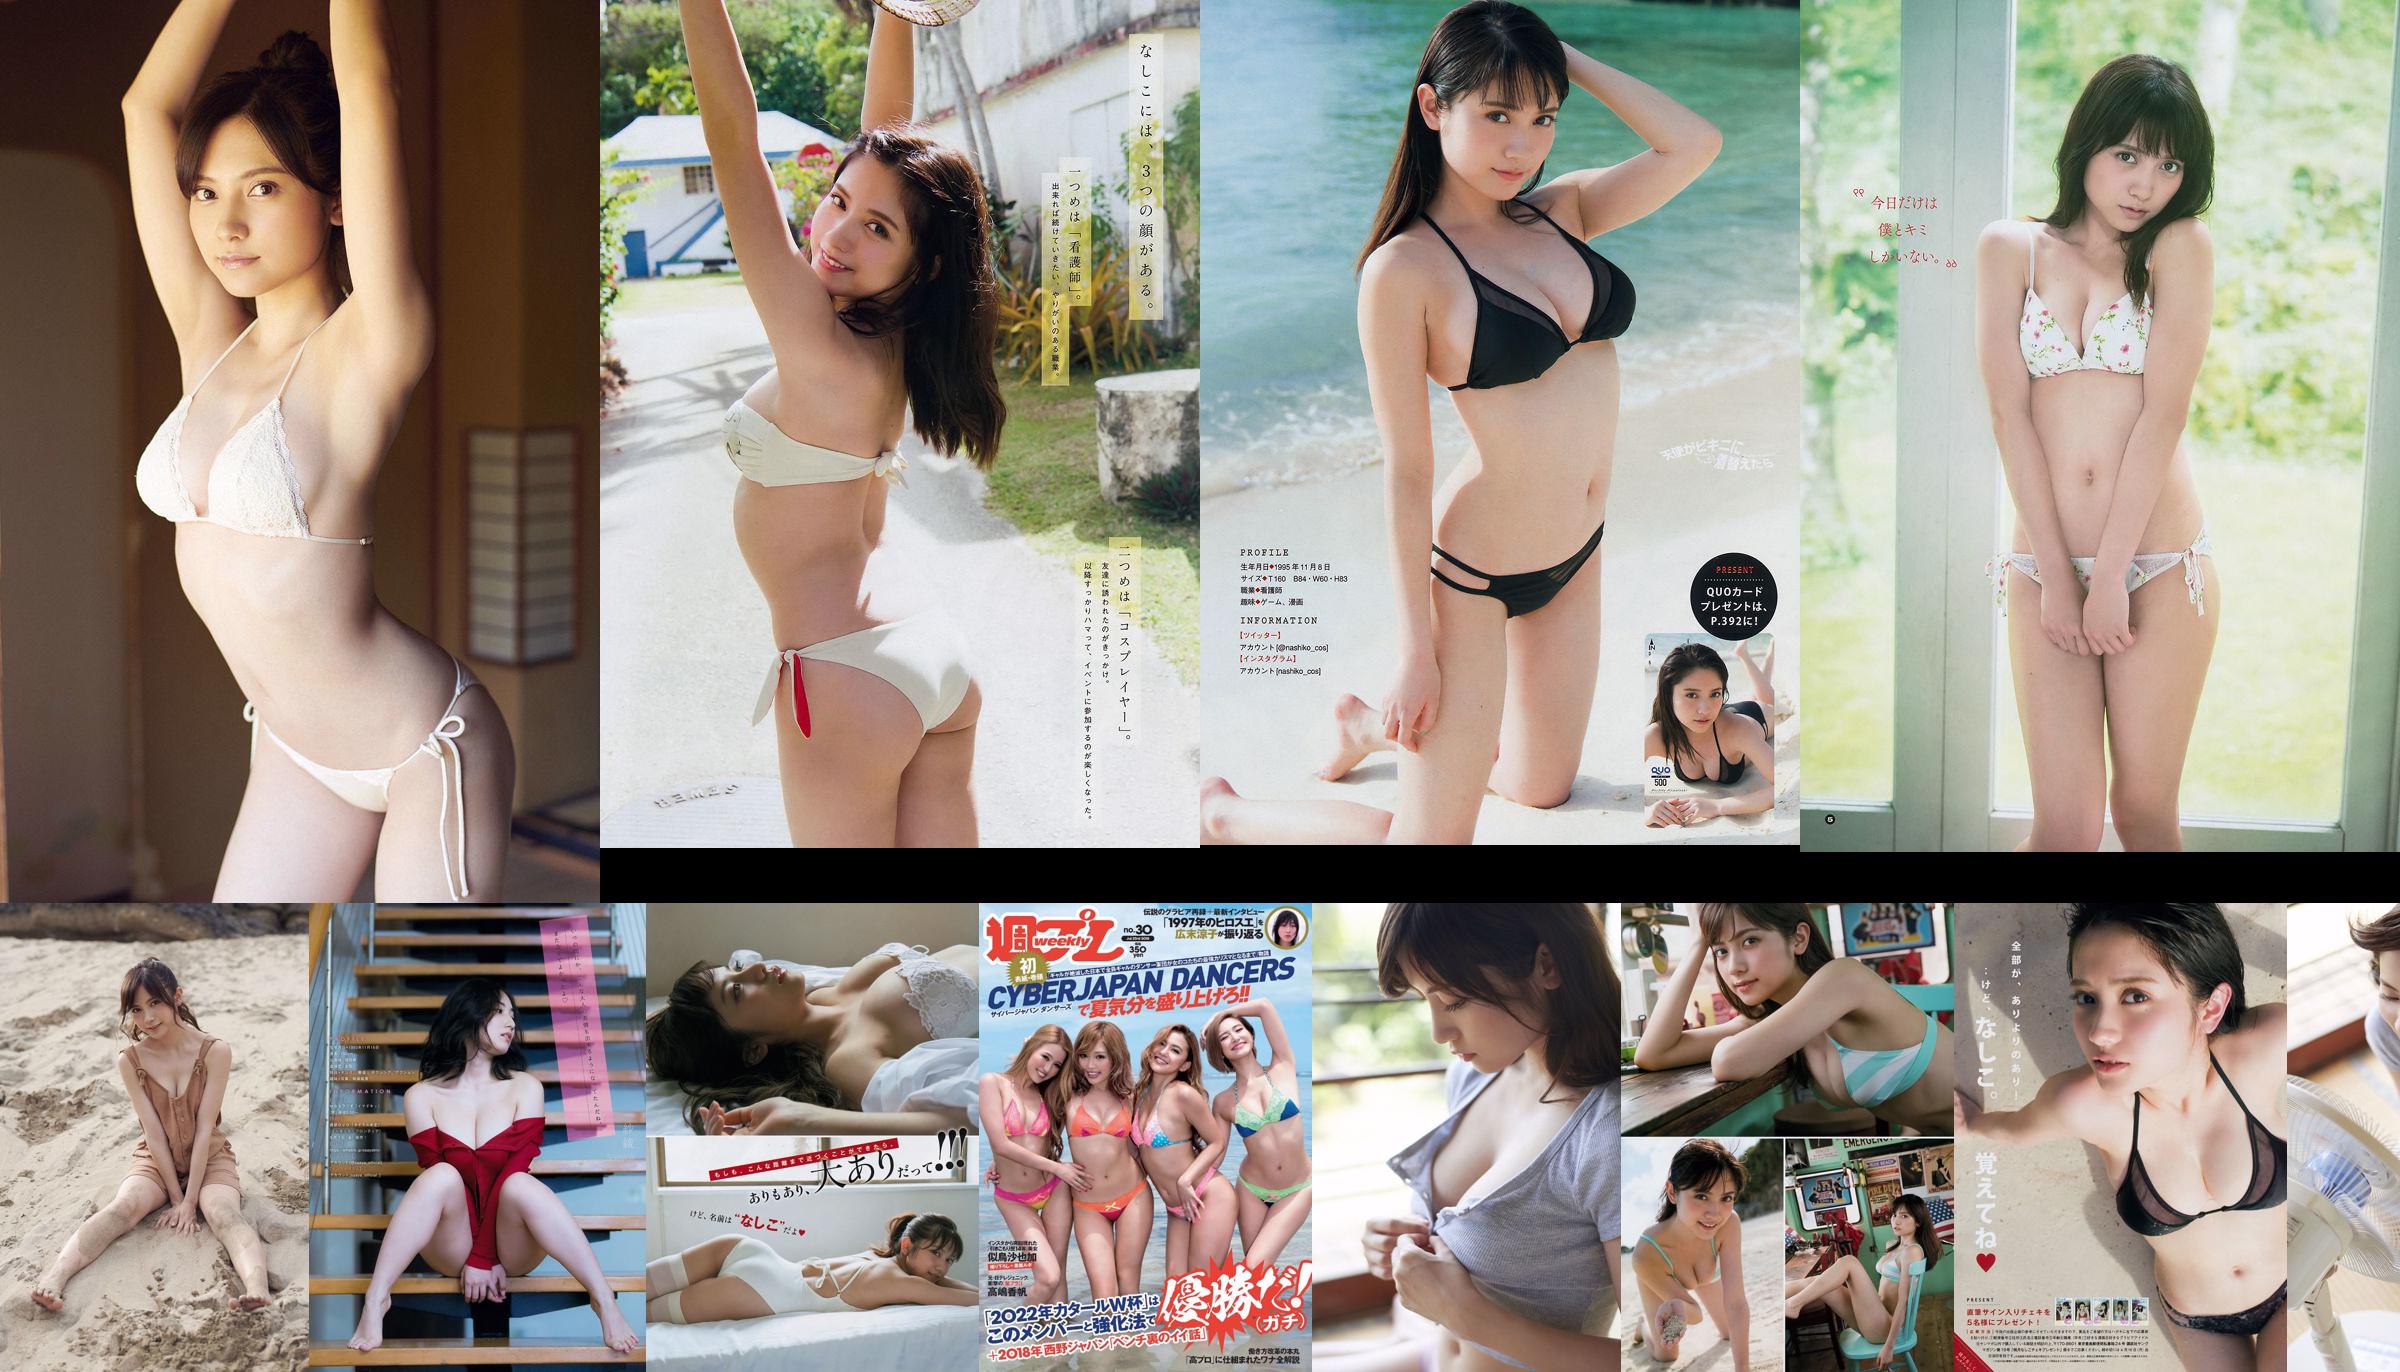 Nashiko Momotsuki Yuka Sugai Natsumi Ikema Raw Oyster Imoko Sae Murase Mao Akutsu [Weekly Playboy] 2018 No.23 Photo No.71c5f0 Page 1